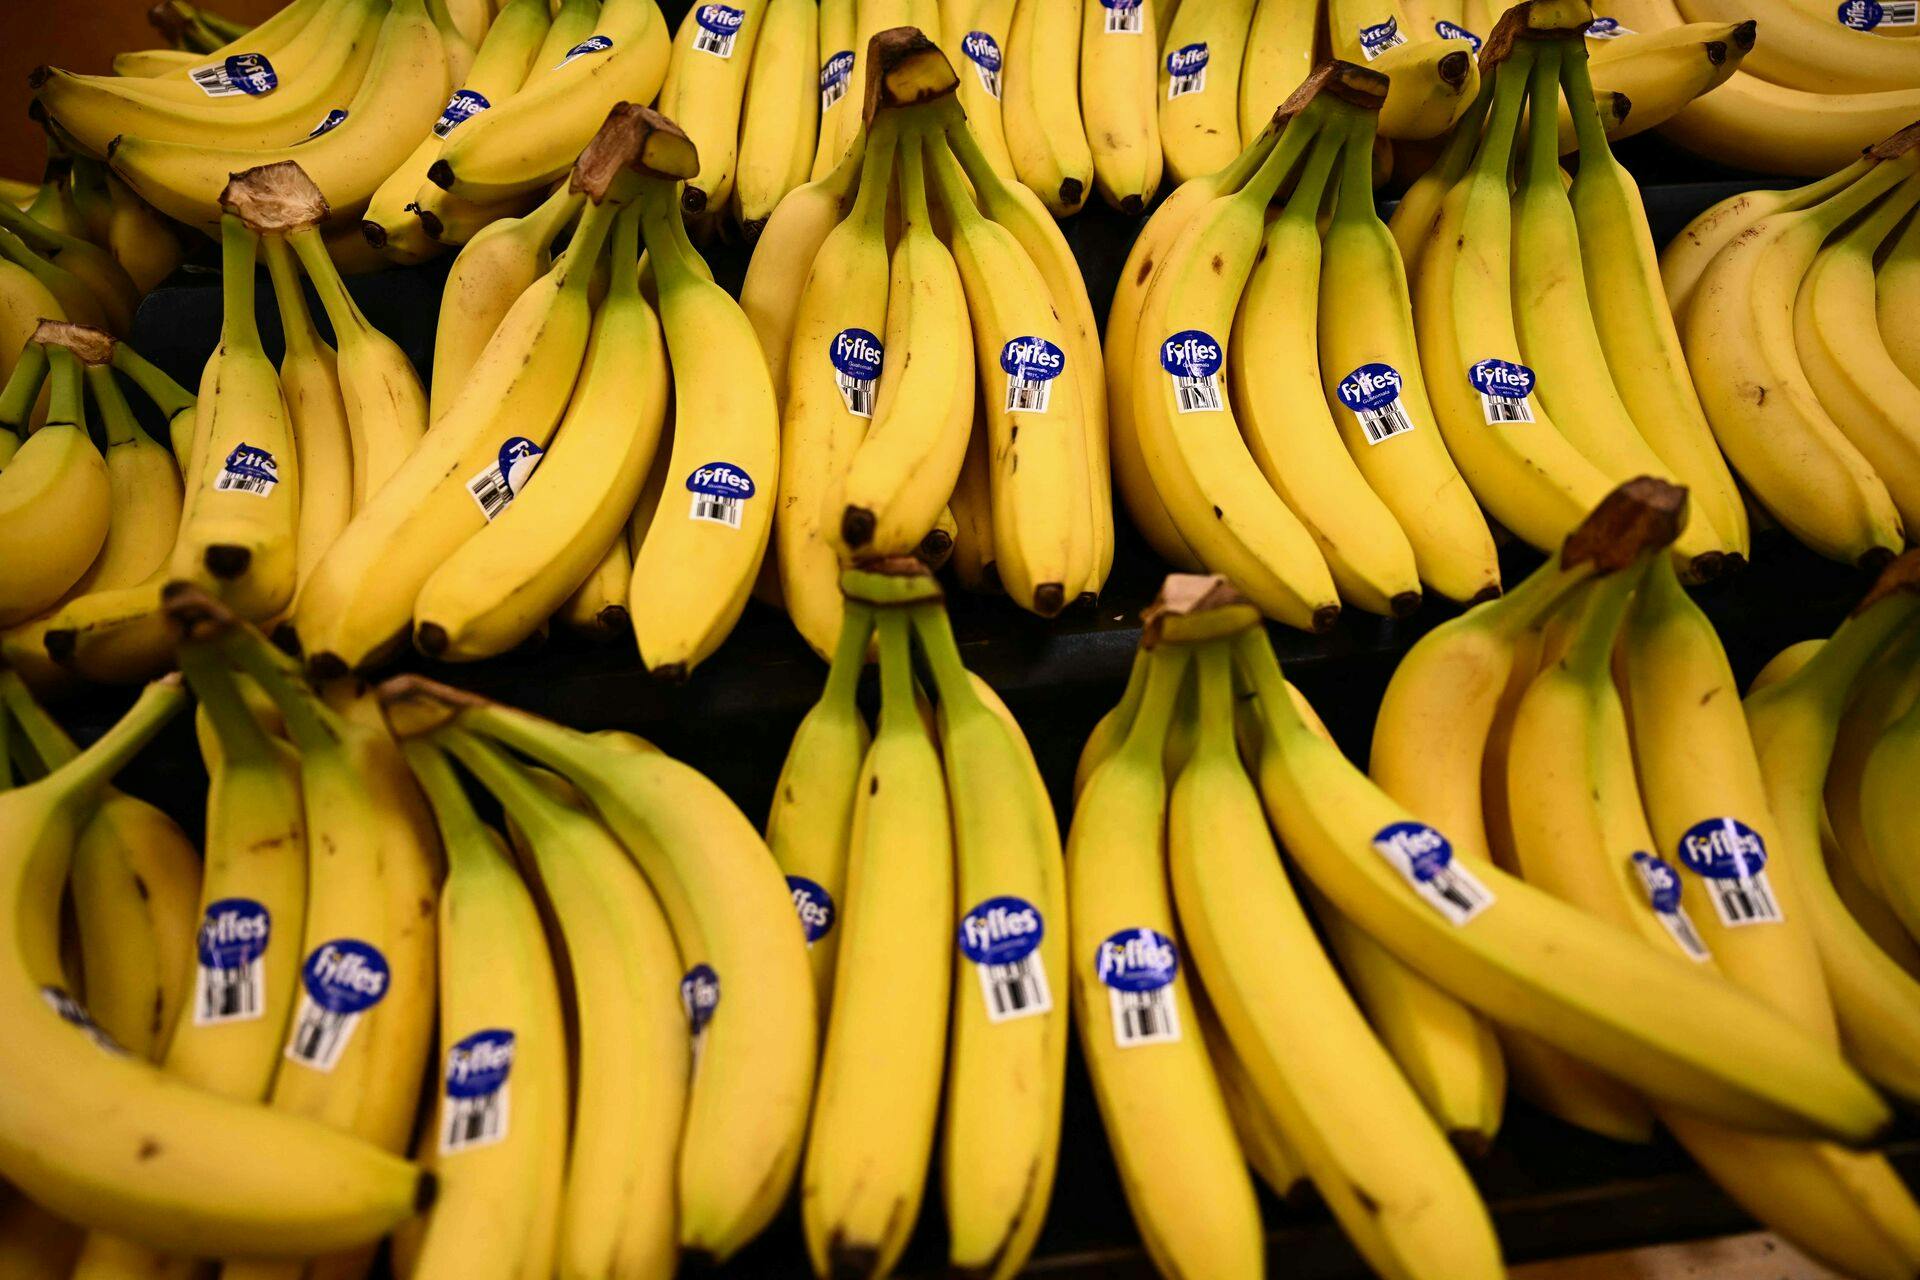 Synes du allerede, at bananer er for dyre? Det kan snart blive meget værre.